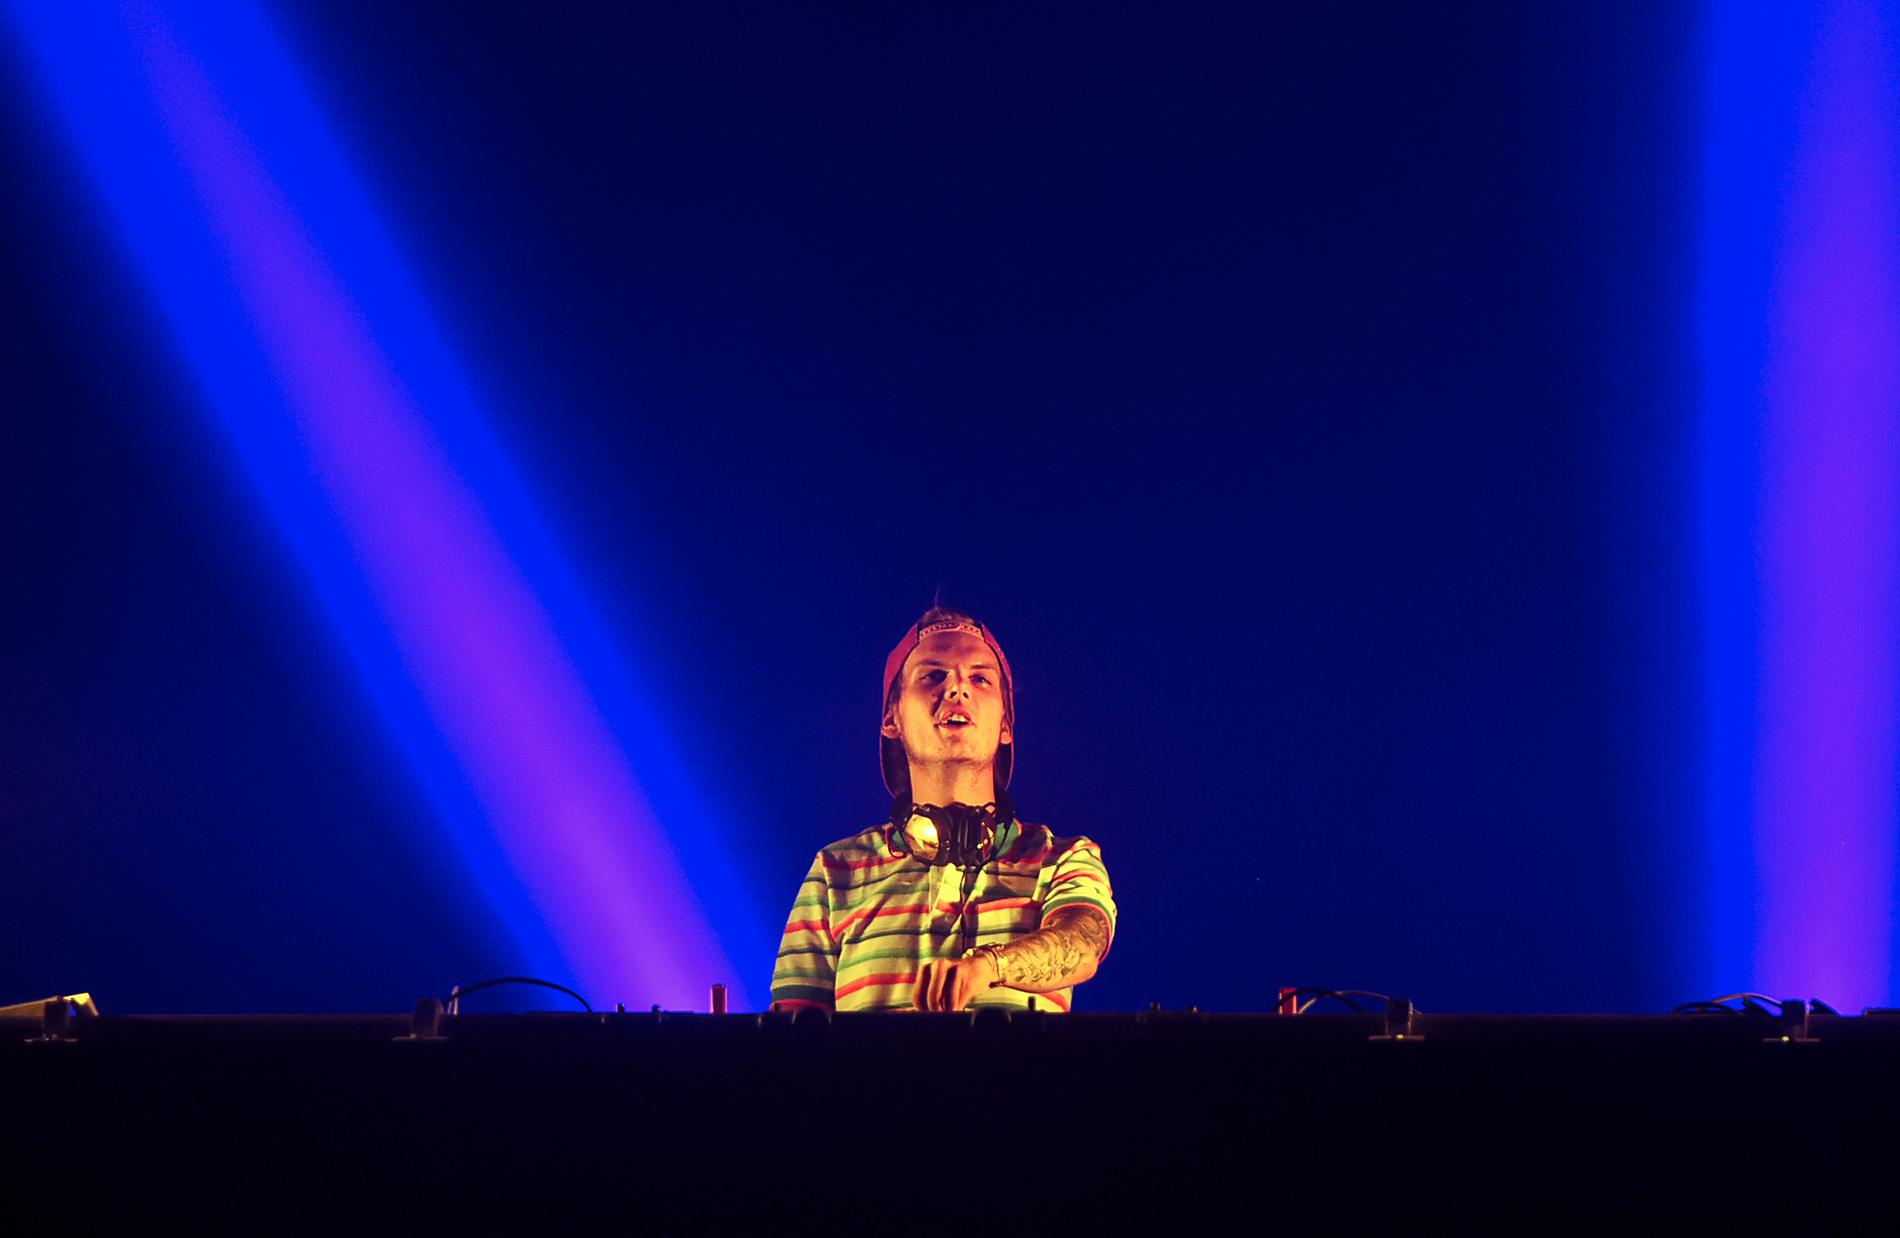 Tim Bergling, ”Avicii”, uppträder på Sziget music festival på ön Hajogyar i Budapest i augusti 2015.